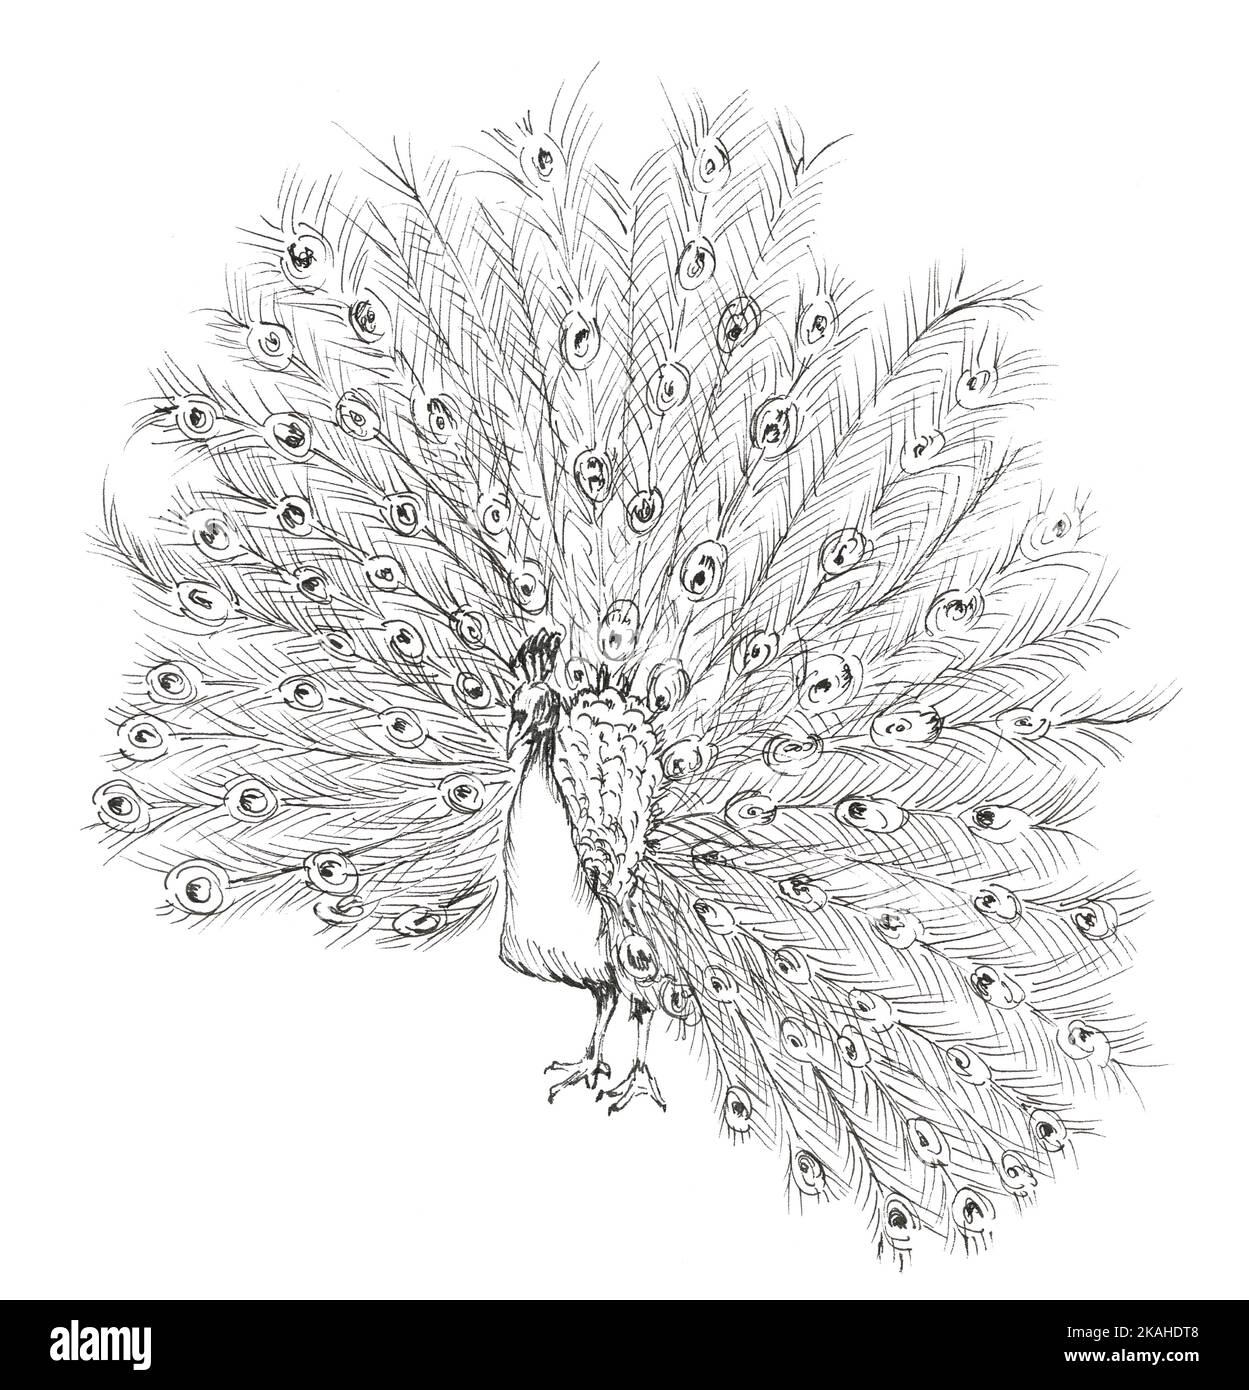 Illustration dessinée à la main d'un paon affichant son plumage. Dessin à l'encre. Banque D'Images